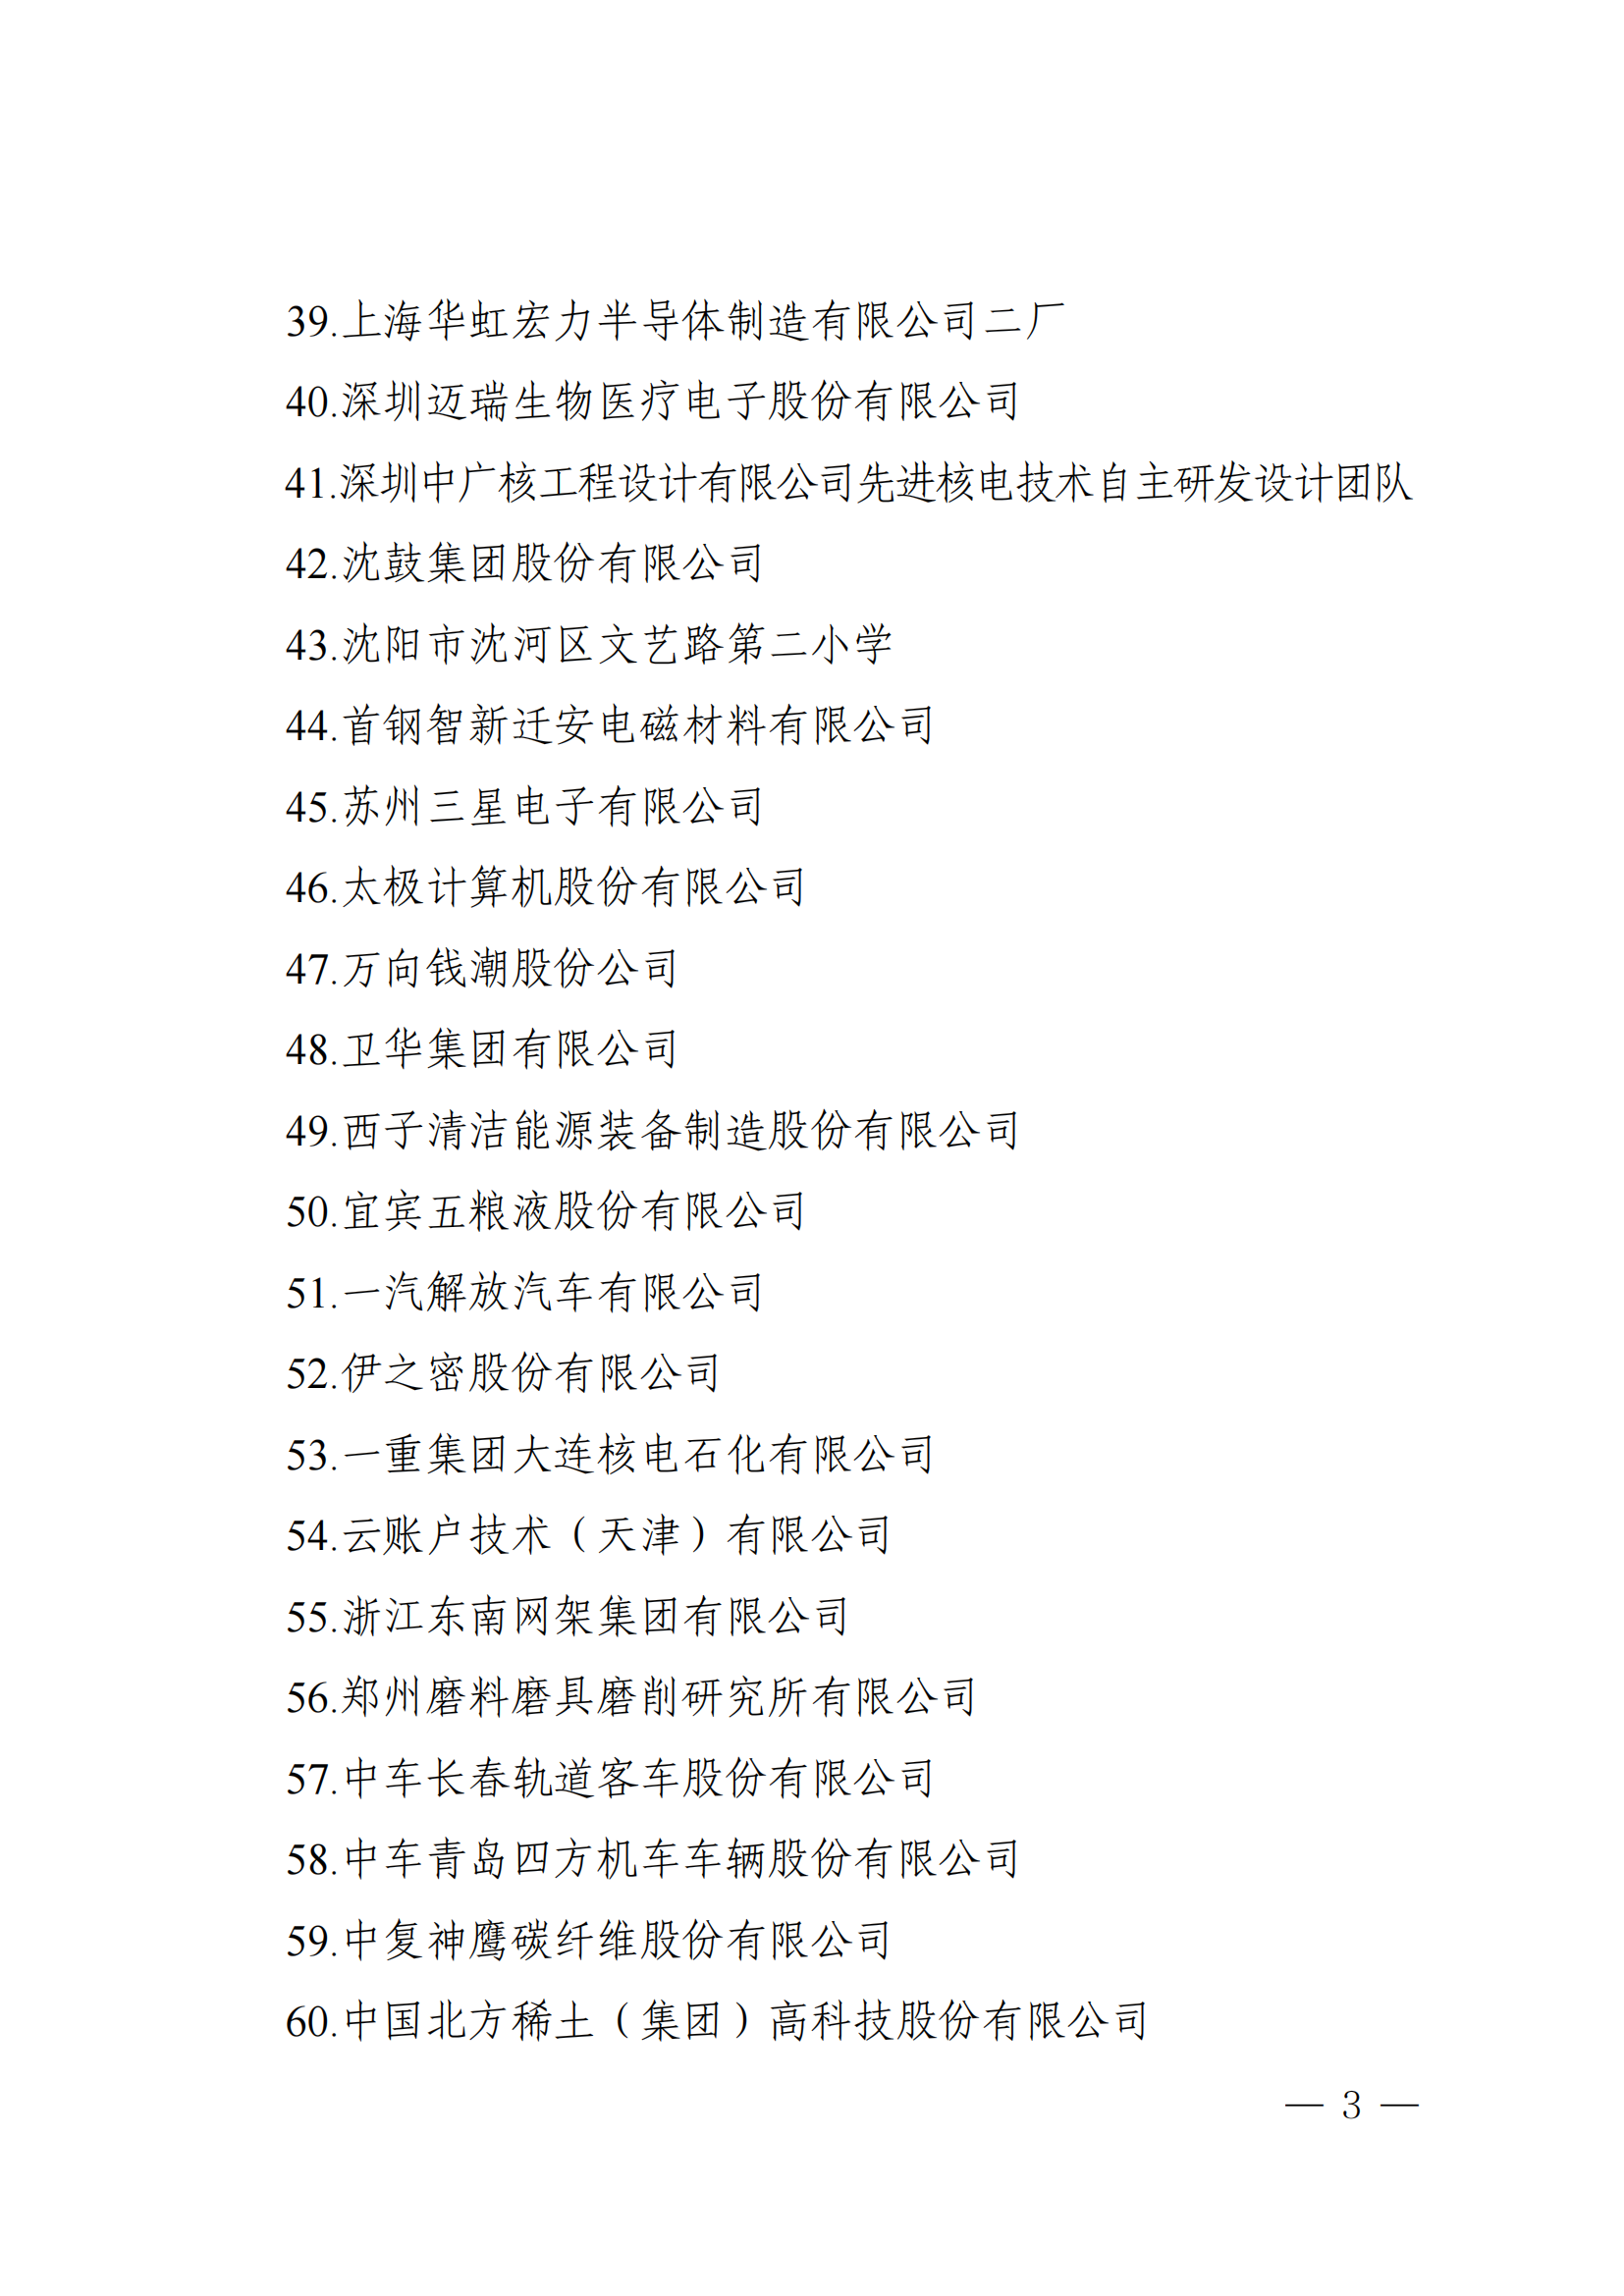 【资讯】第五届中国质量奖和中国质量奖提名奖建议名单公示